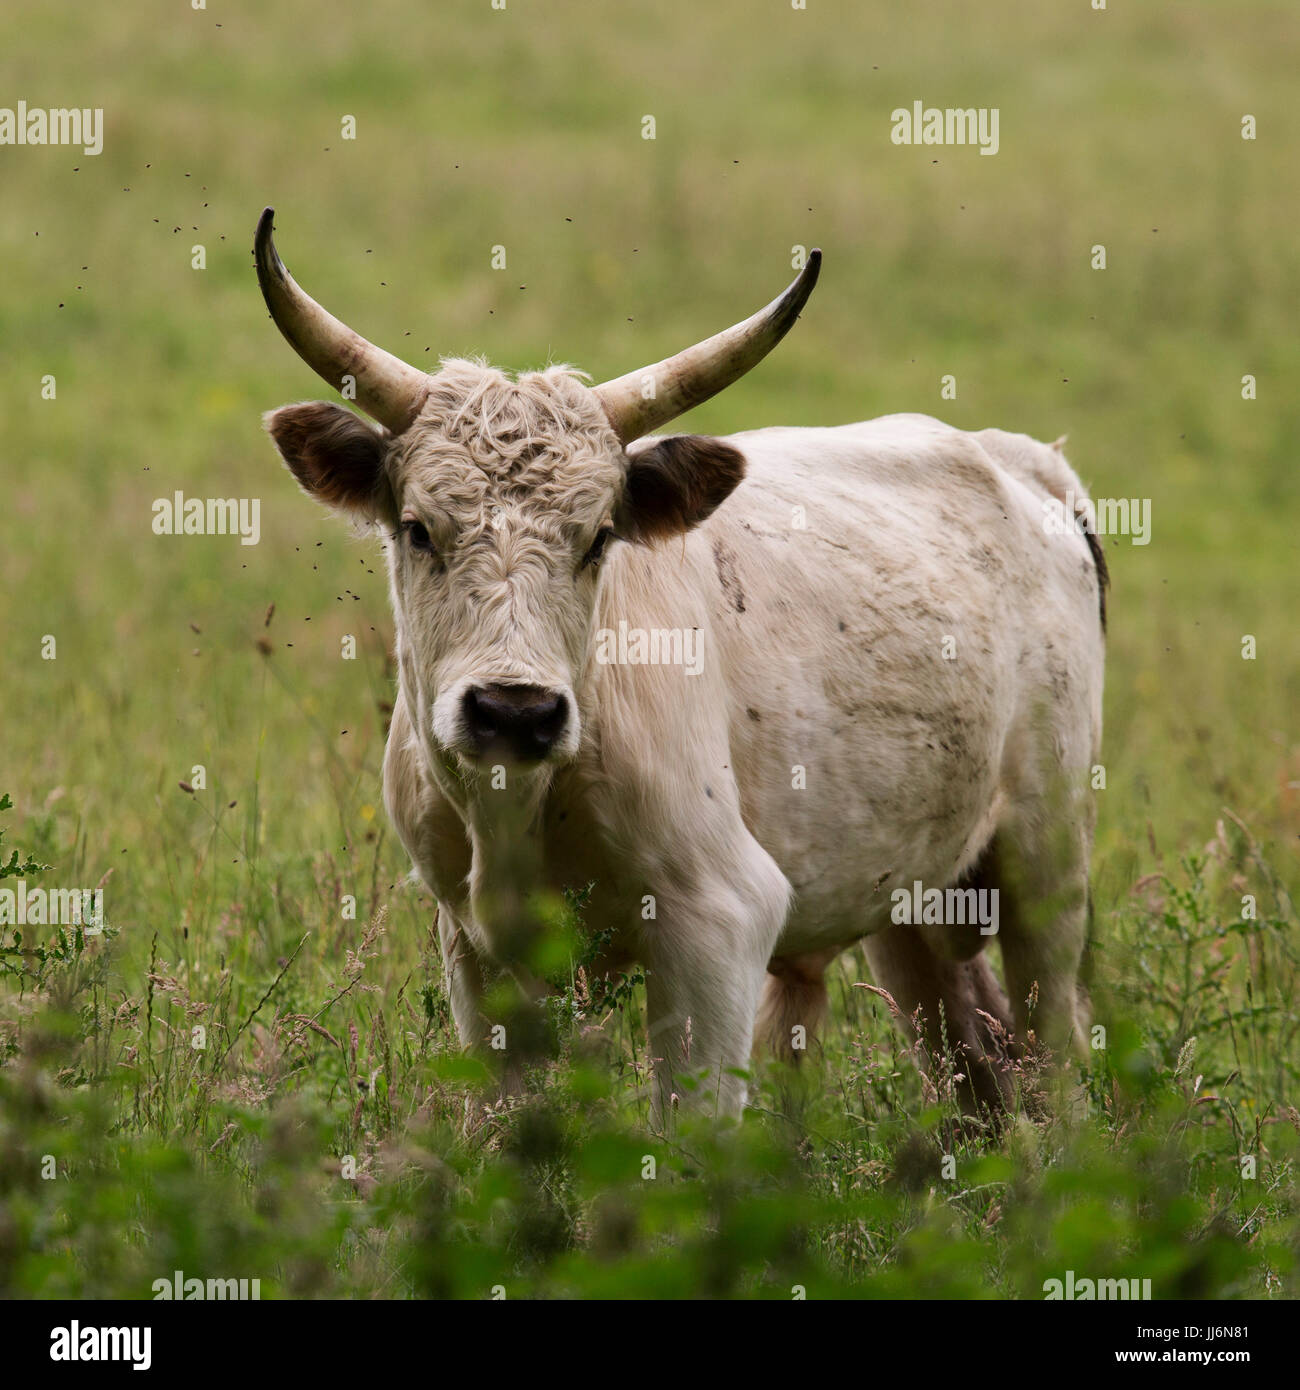 Uno dei capi di bestiame selvatico a Chillingham, circondato da mosche, in Northumberland, Inghilterra. Foto Stock